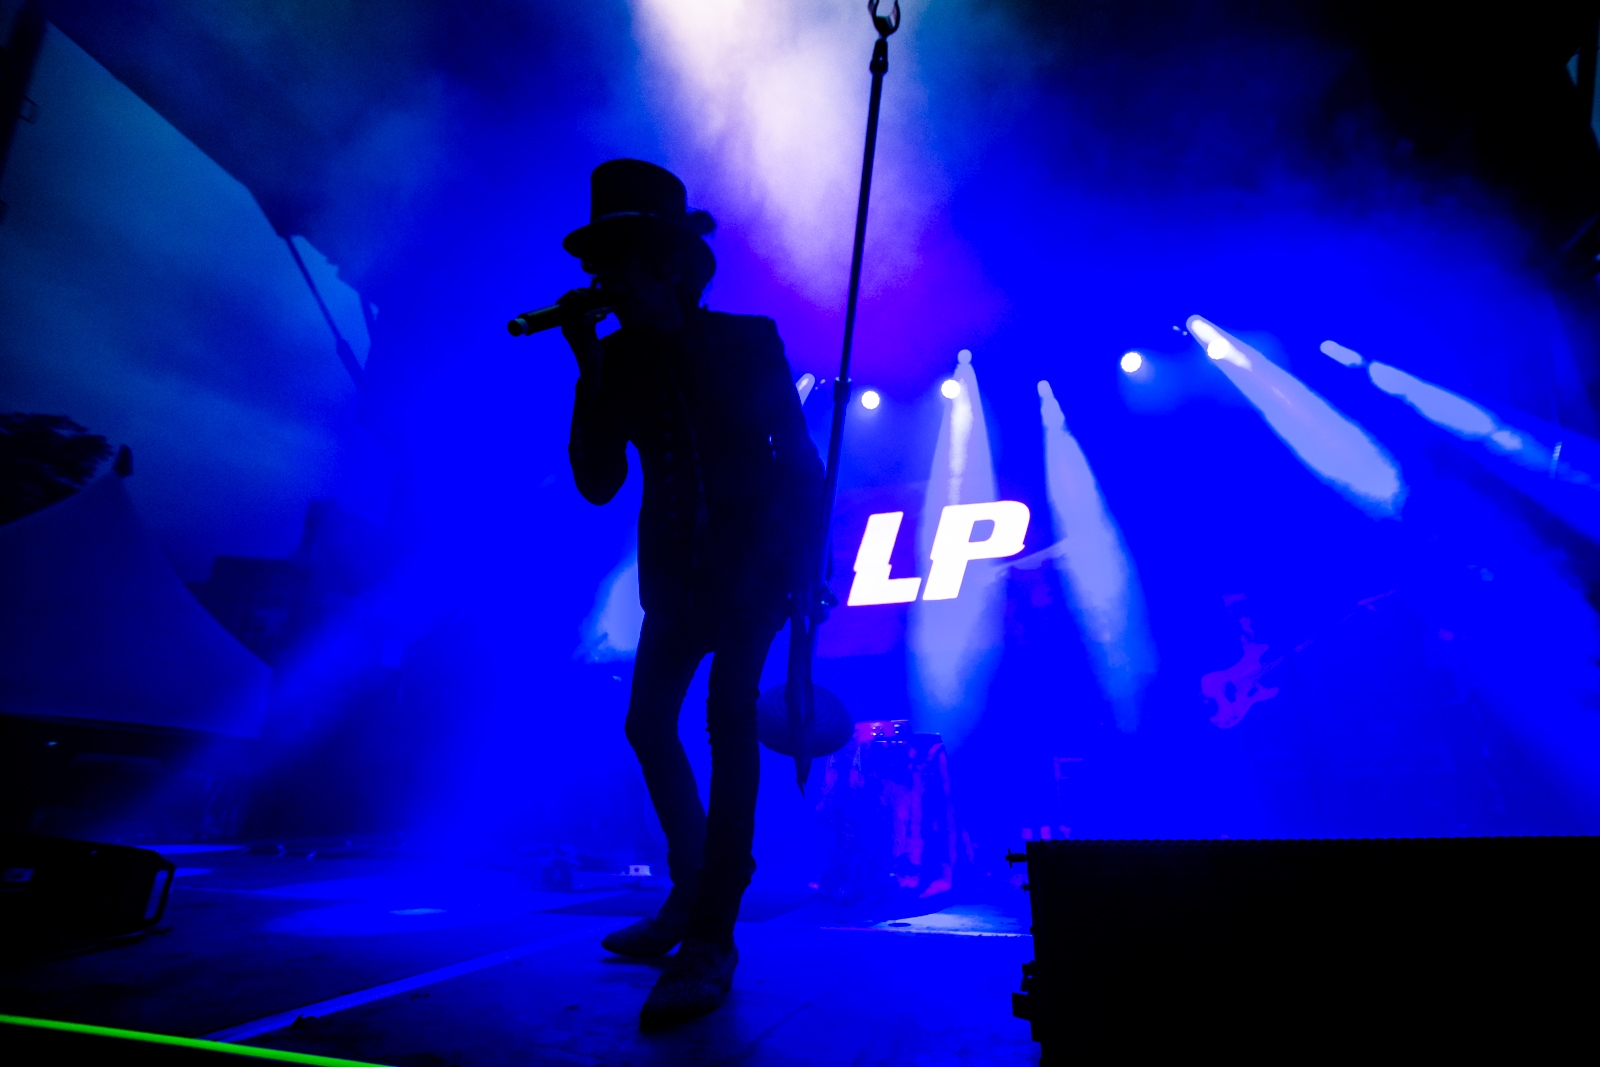 LP @ The Park Show - Aug 10 2019